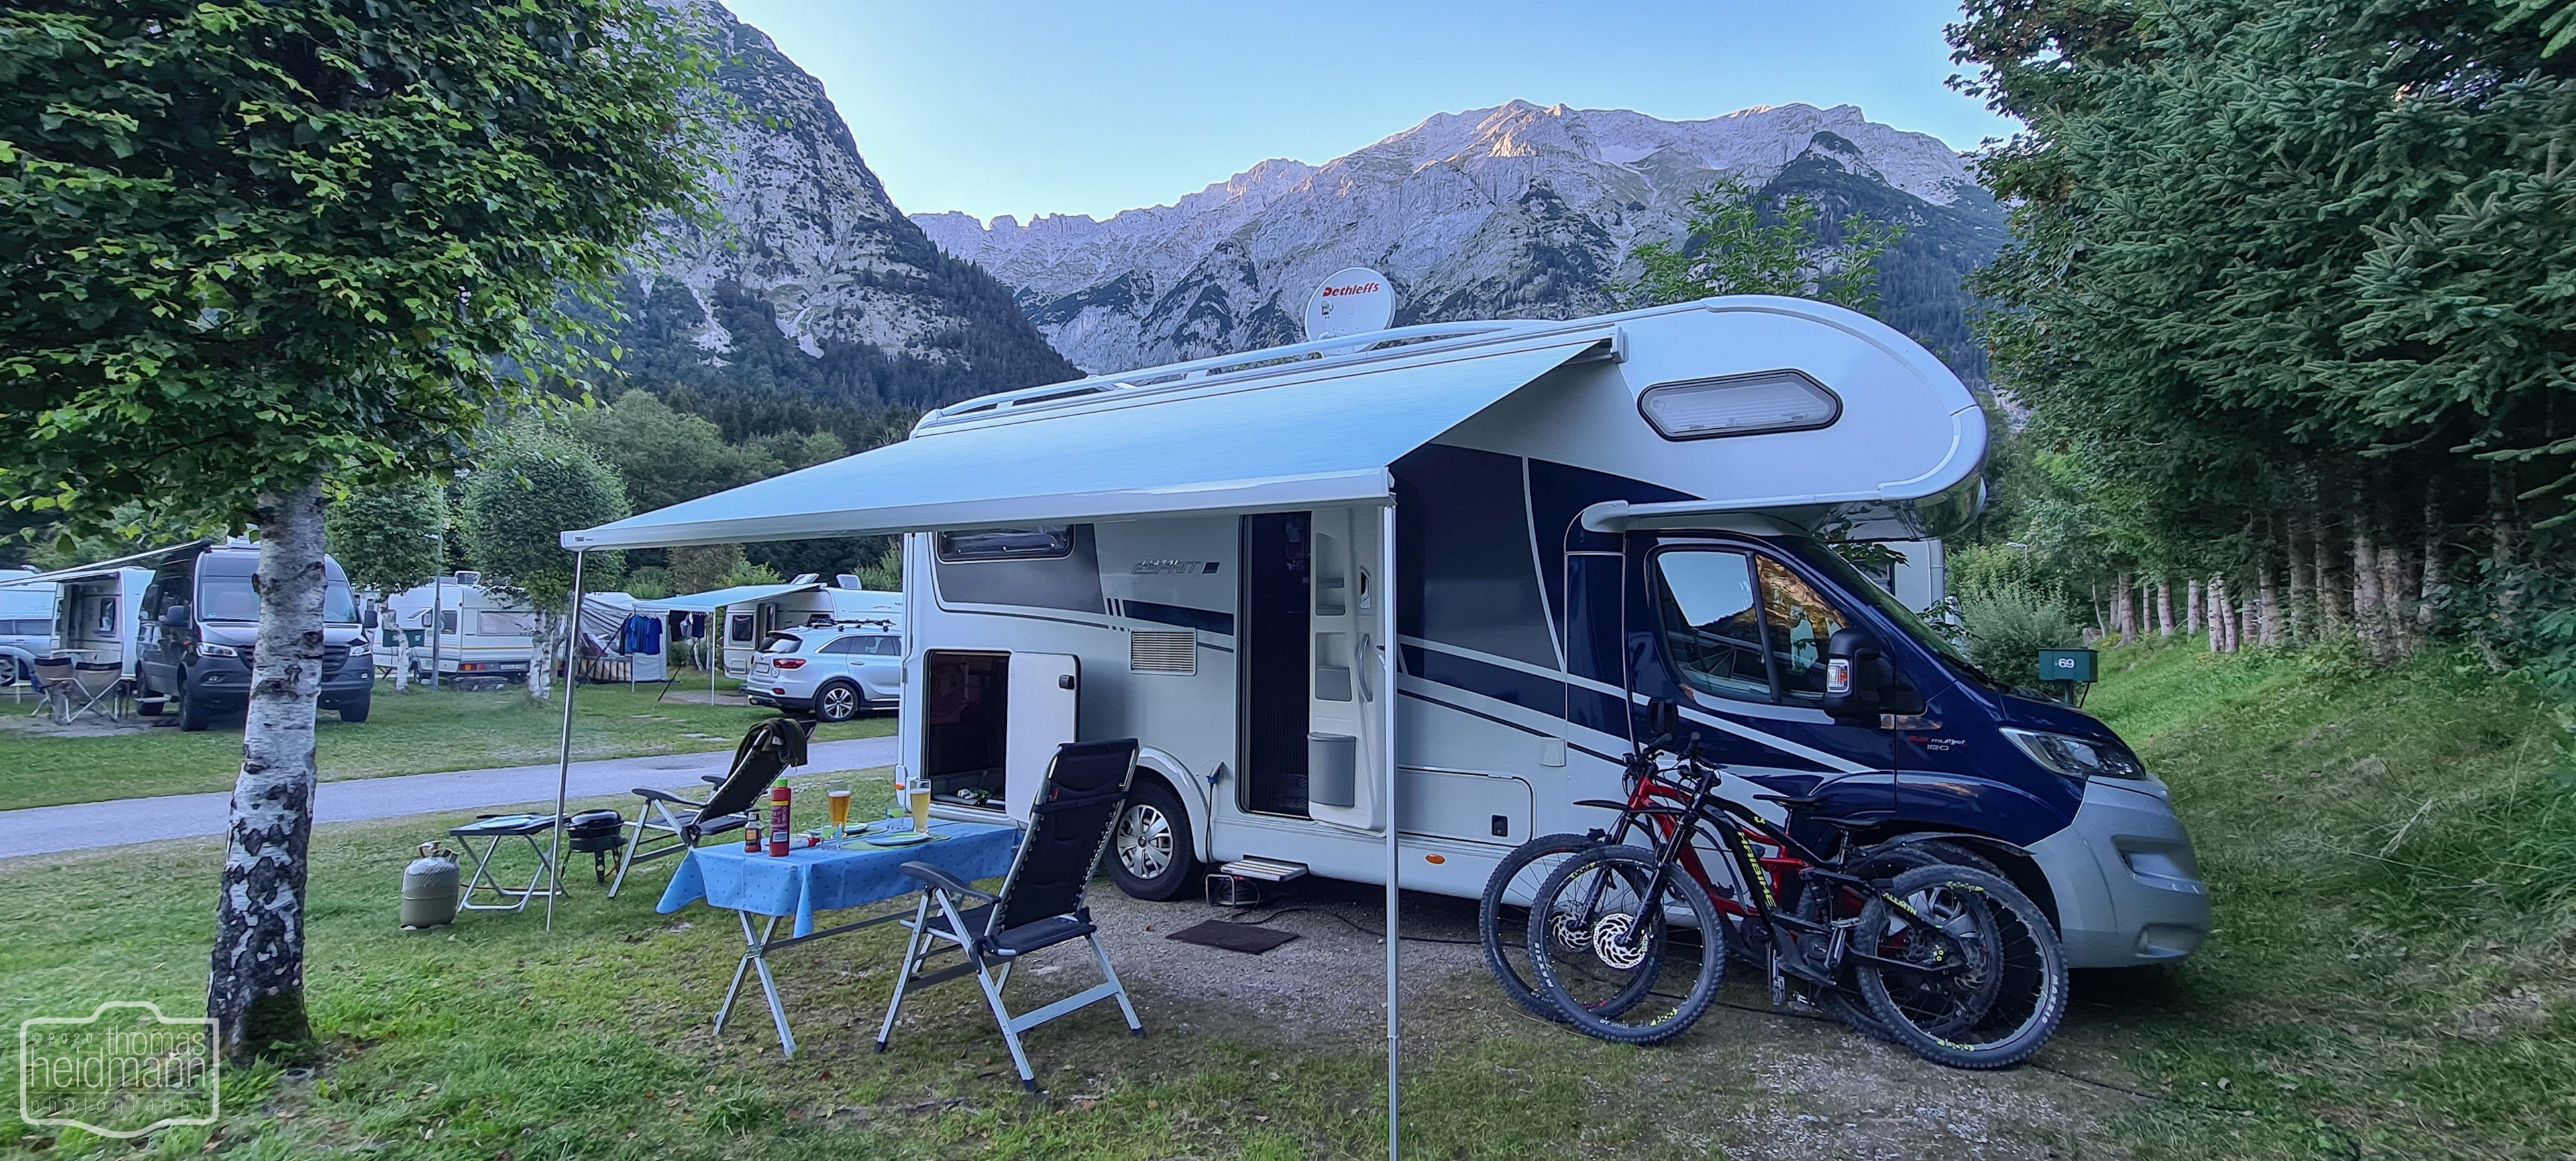 Campingplatz Leutasch am Wettersteingebirge